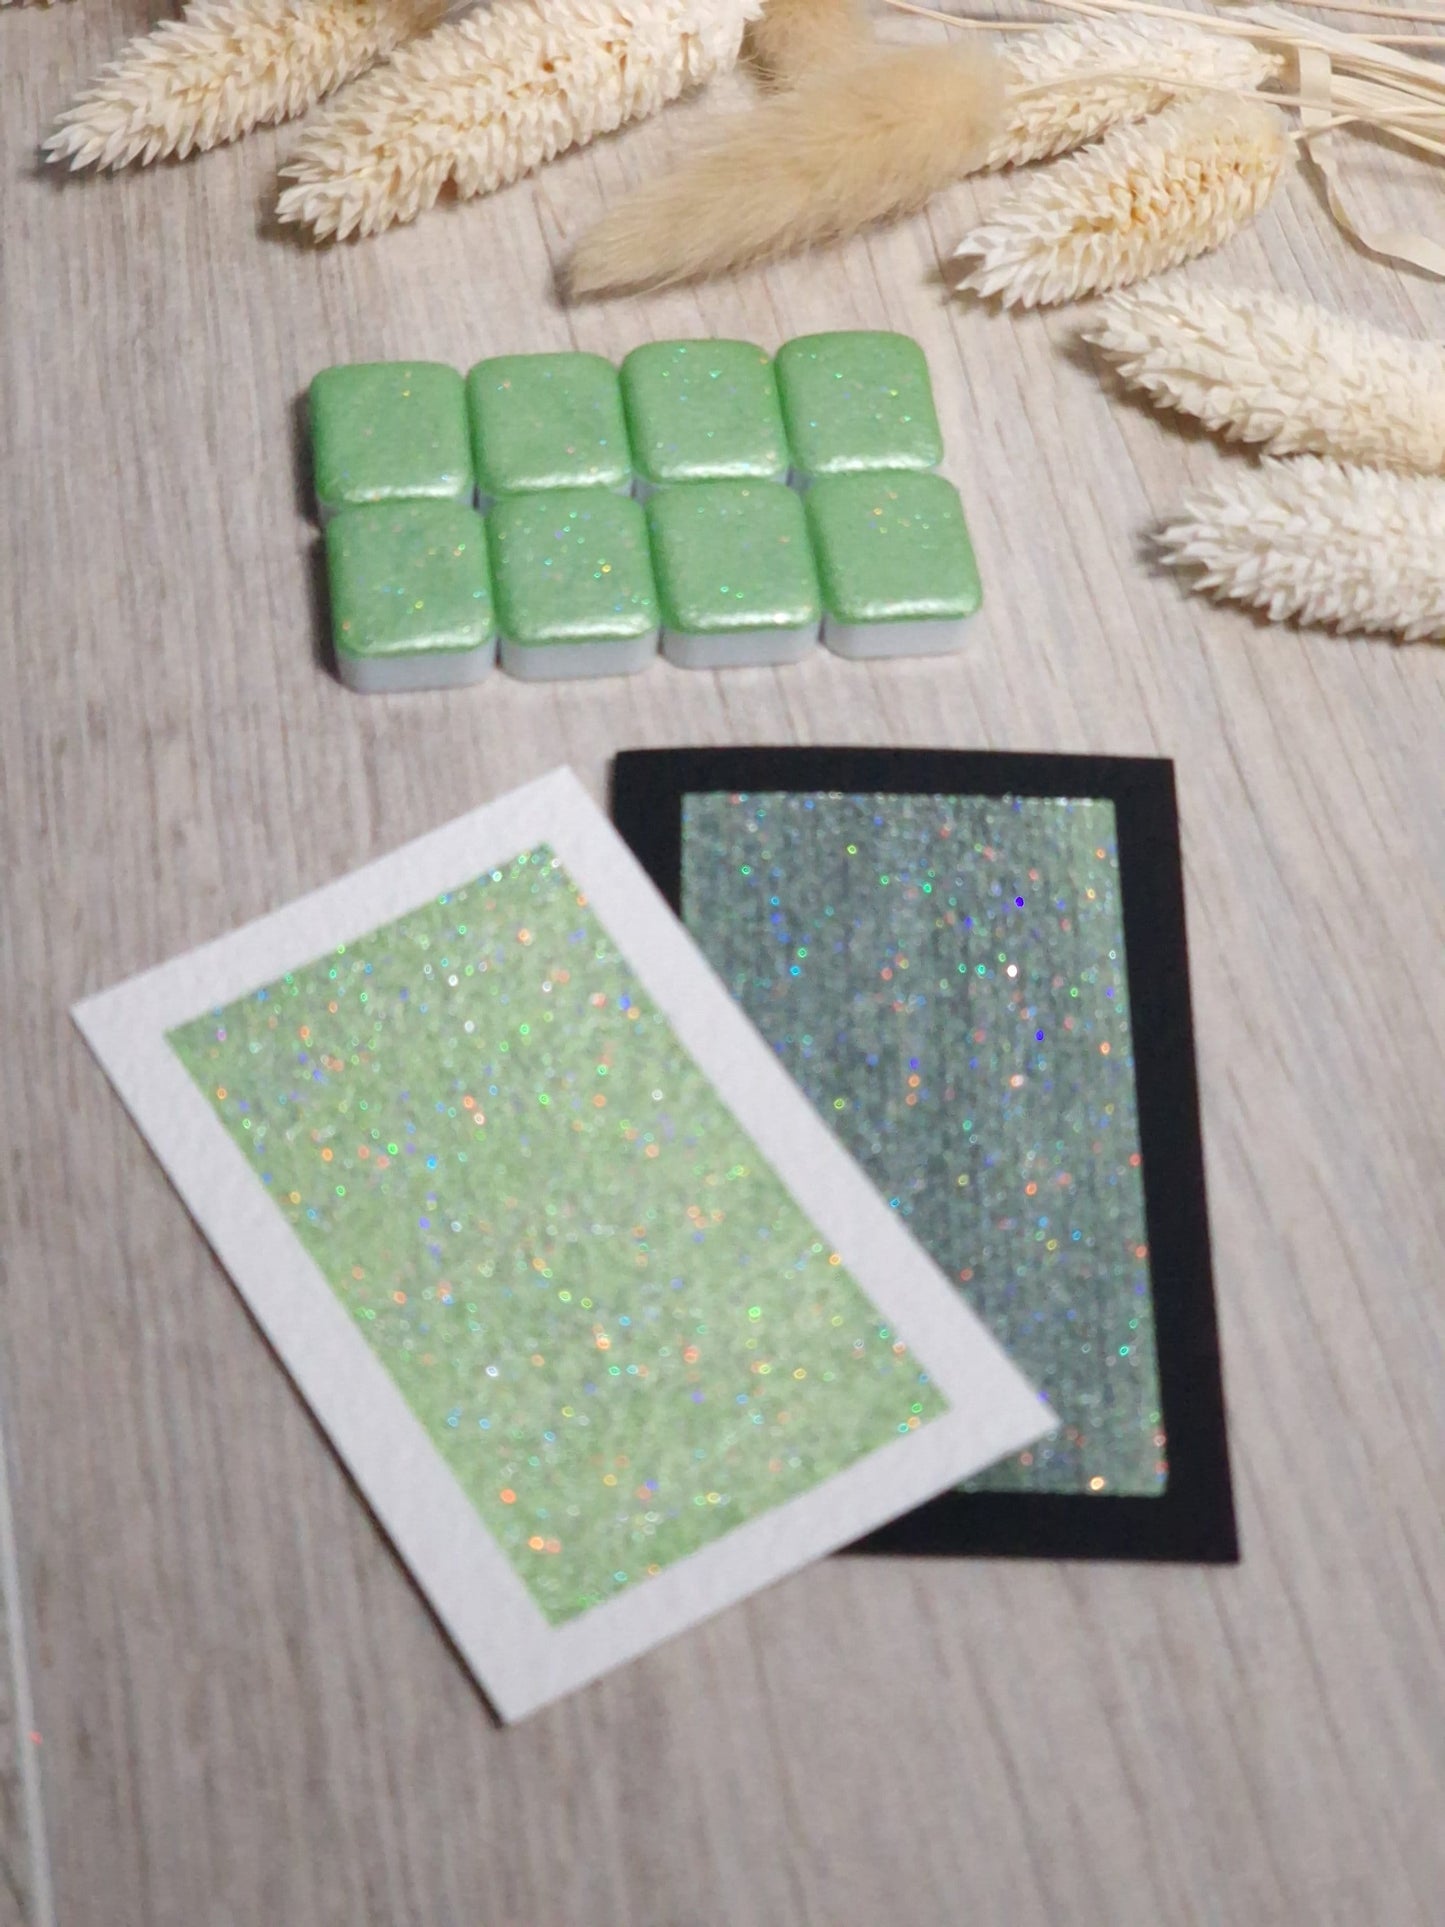 Minty | Quart de godet d'aquarelle pailletée | aquarelle holographique verte | aquarelle scintillante verte | fabriquée à la main